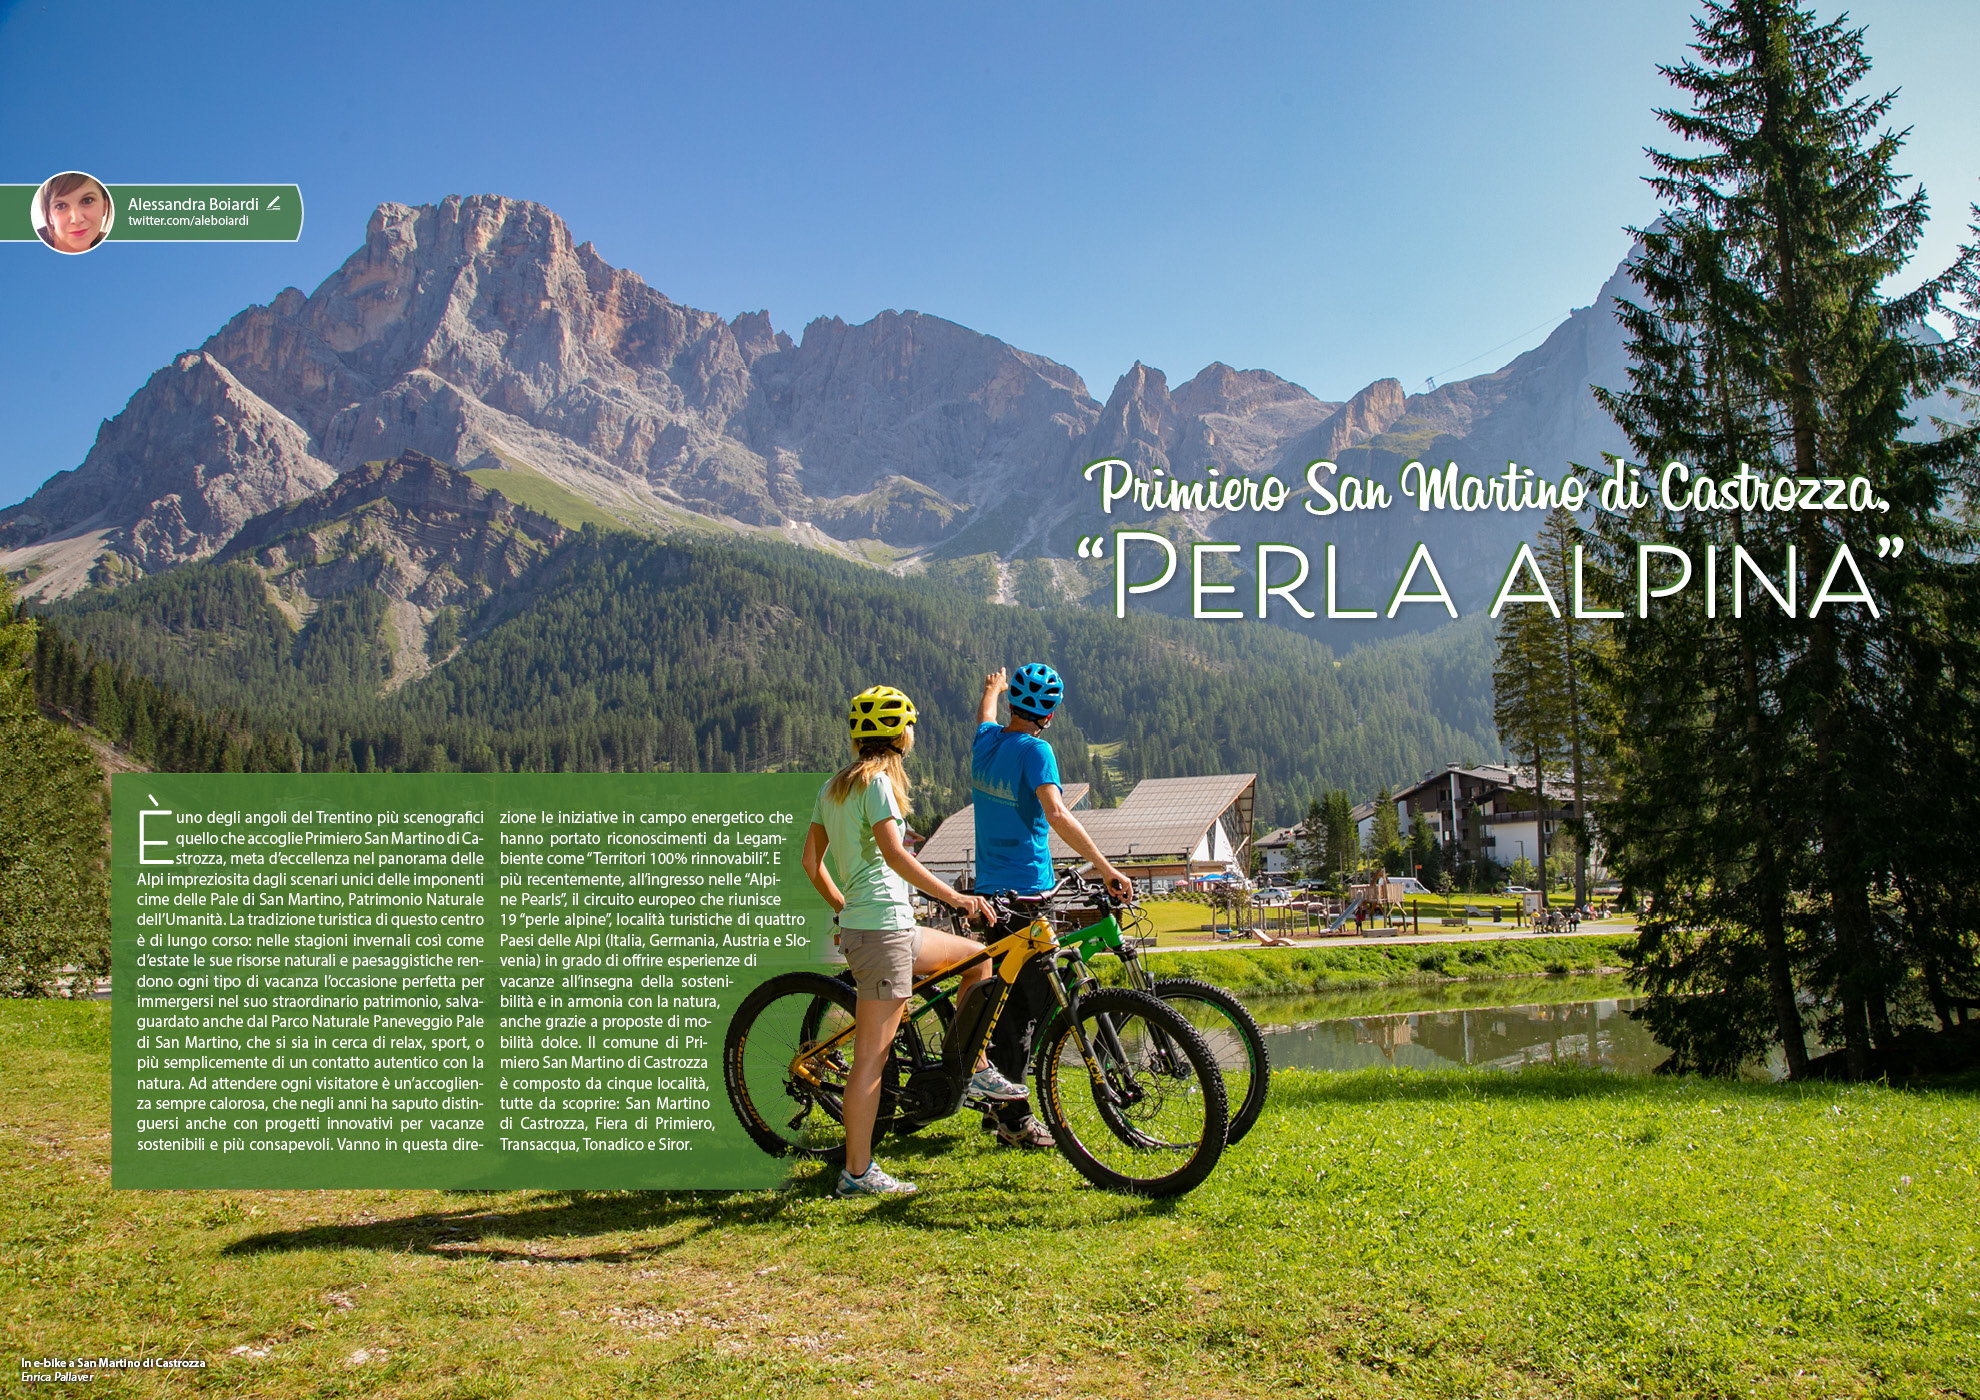 e-borghi travel 36: Speciale paesaggi 2022 - Primiero San Martino di Castrozza: la perla Alpina